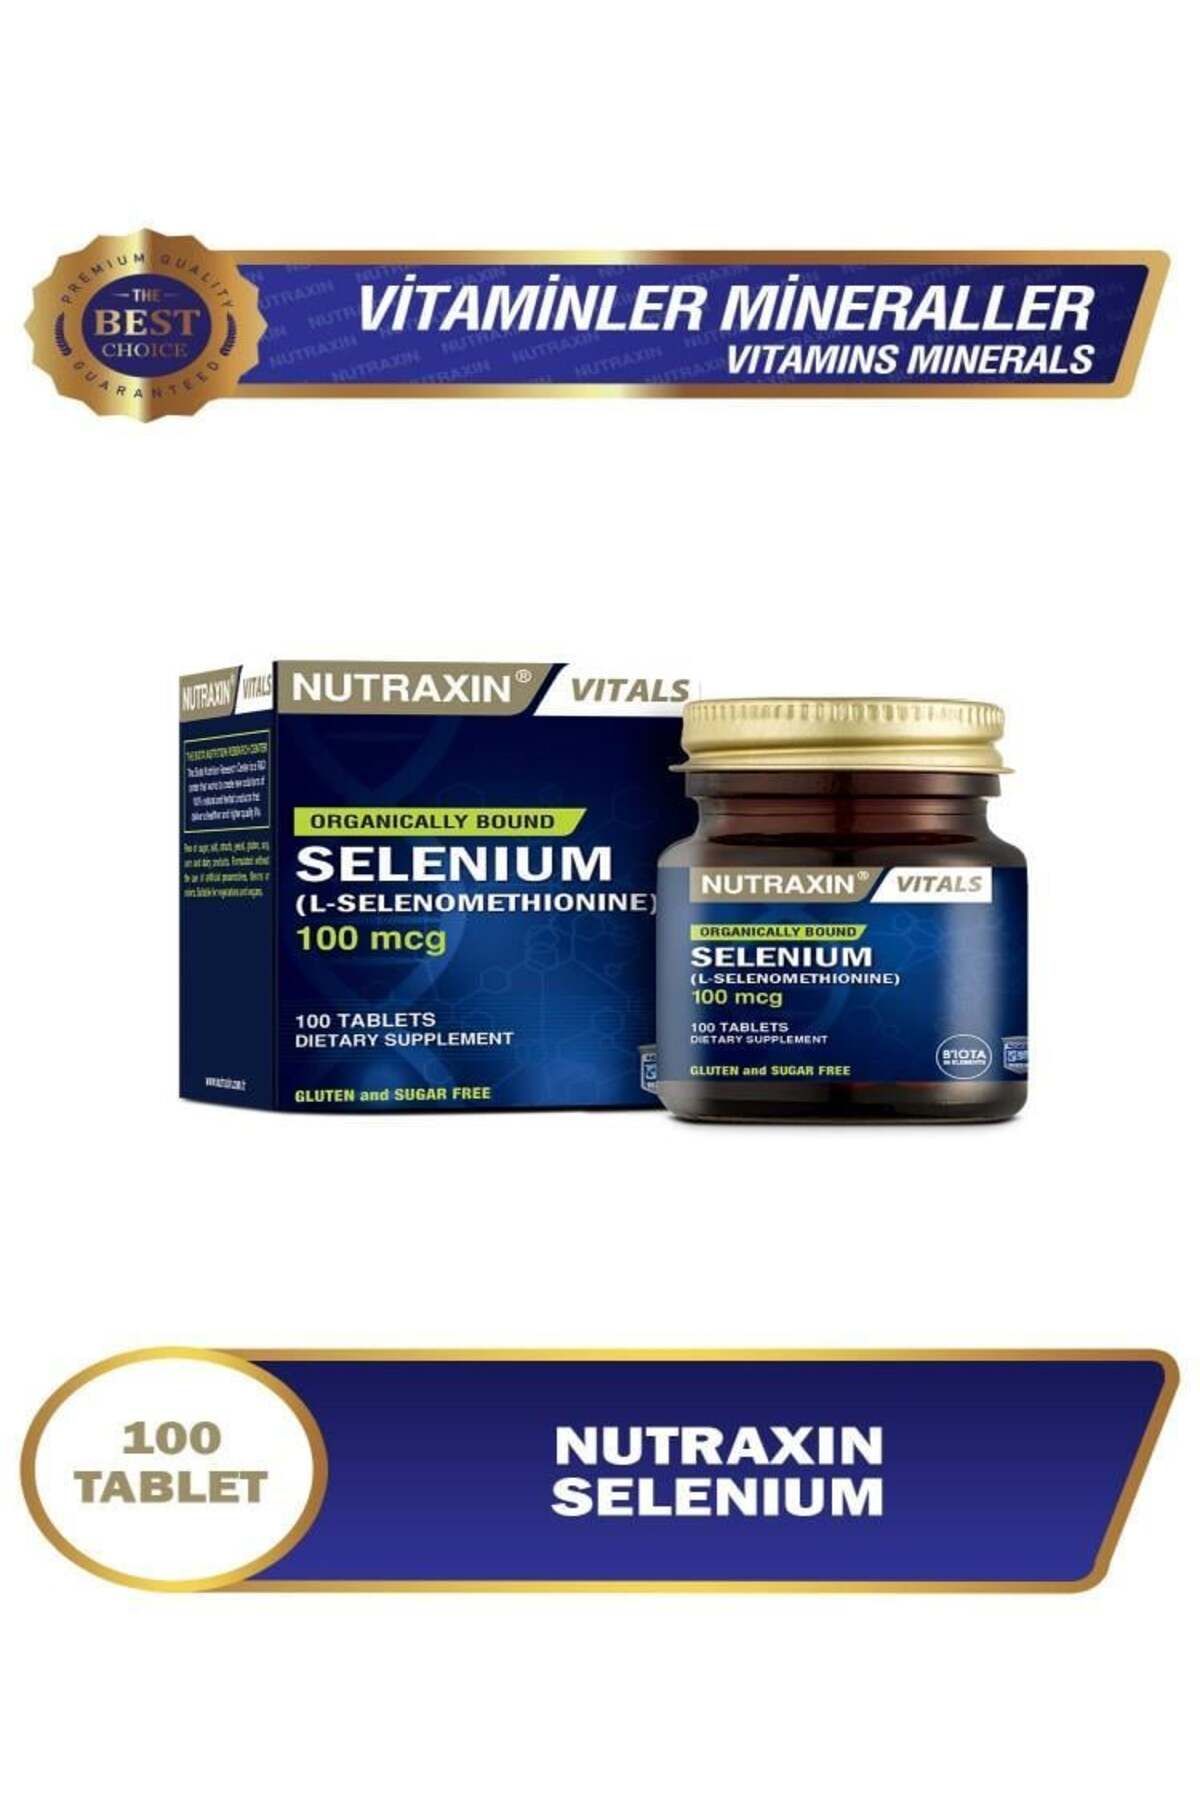 Nutraxin Koruyucu ve Tatlandırıcı İçermeyen Selenium 100 mcg 100 Tablet Selenyum içeren Takviye Edici Gıda